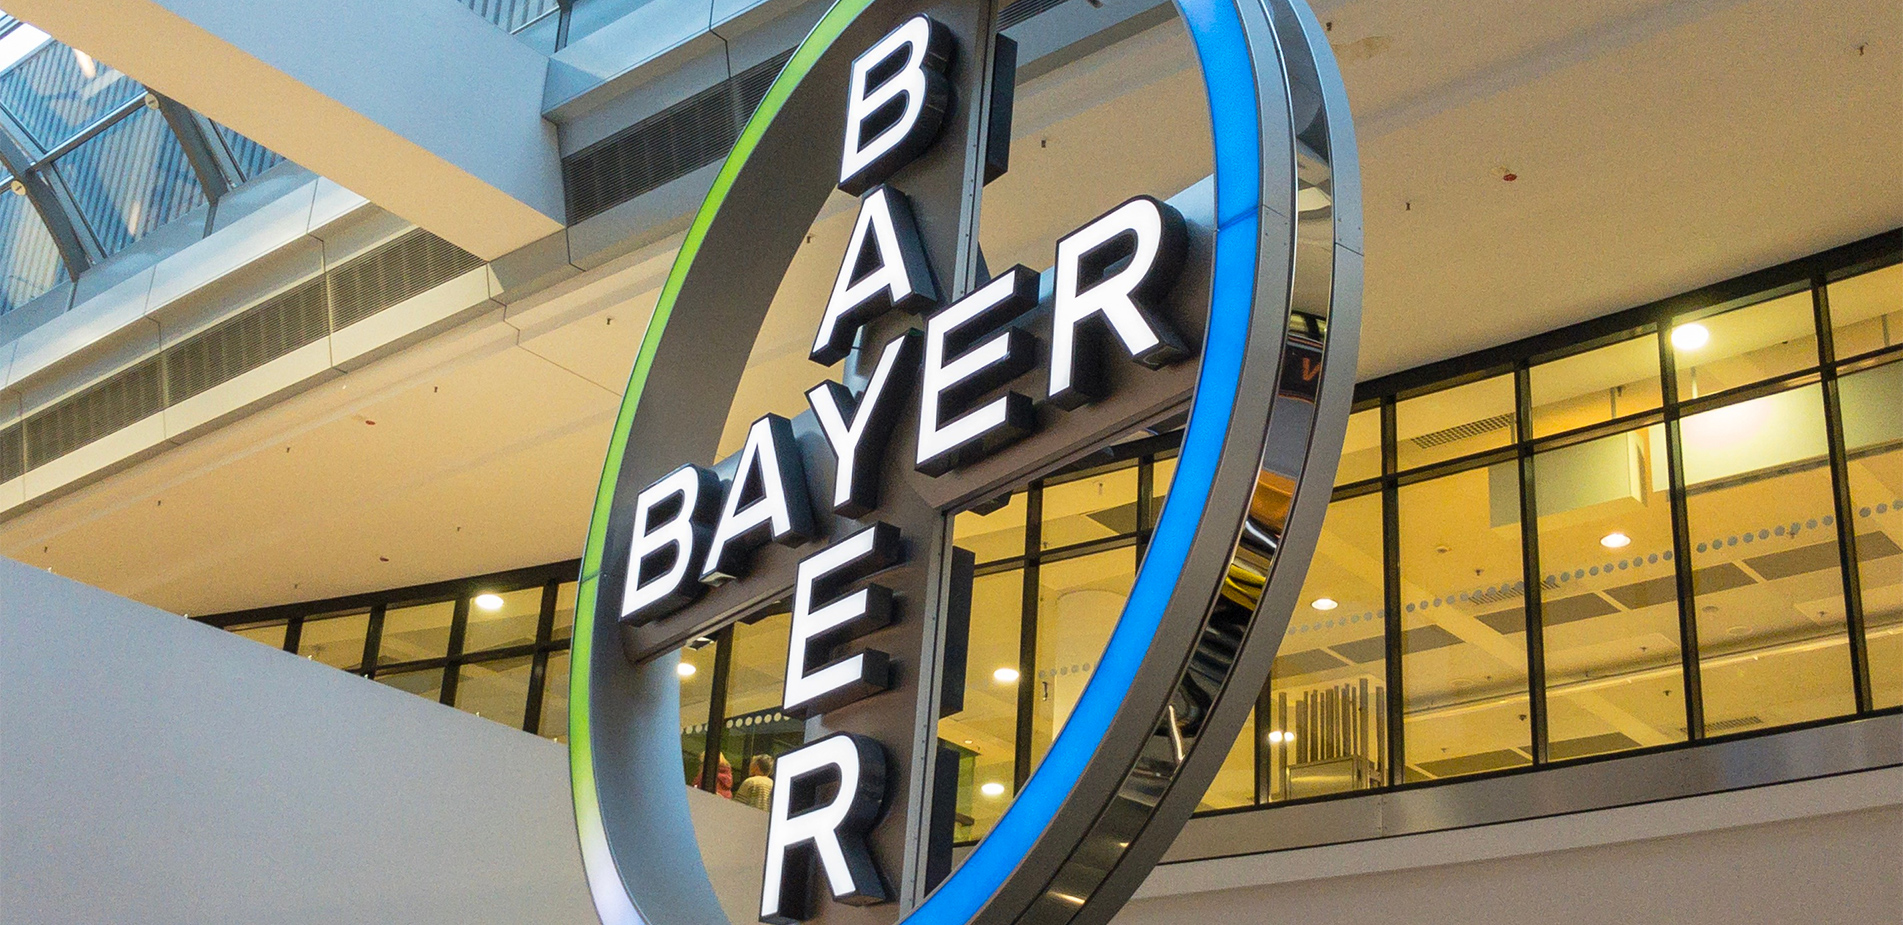 Πρόστιμο 1,5 δισεκατομμύρια δολάρια στη Bayer για τη γλυφοσάτη, λίγες ημέρες μετά την έγκρισή της από την ΕΕ